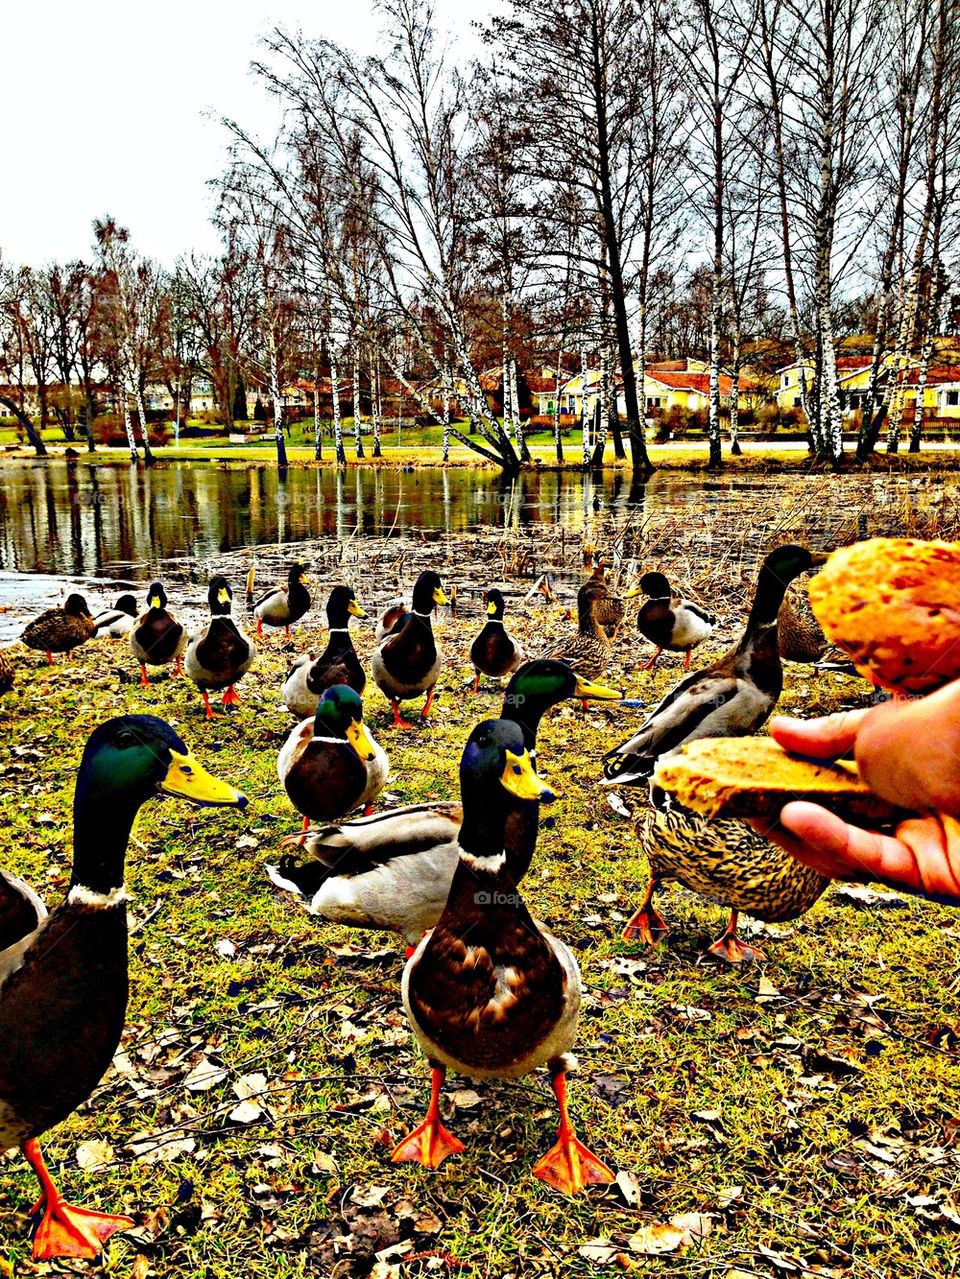 Go ahead nice ducks....a bit to eat?!